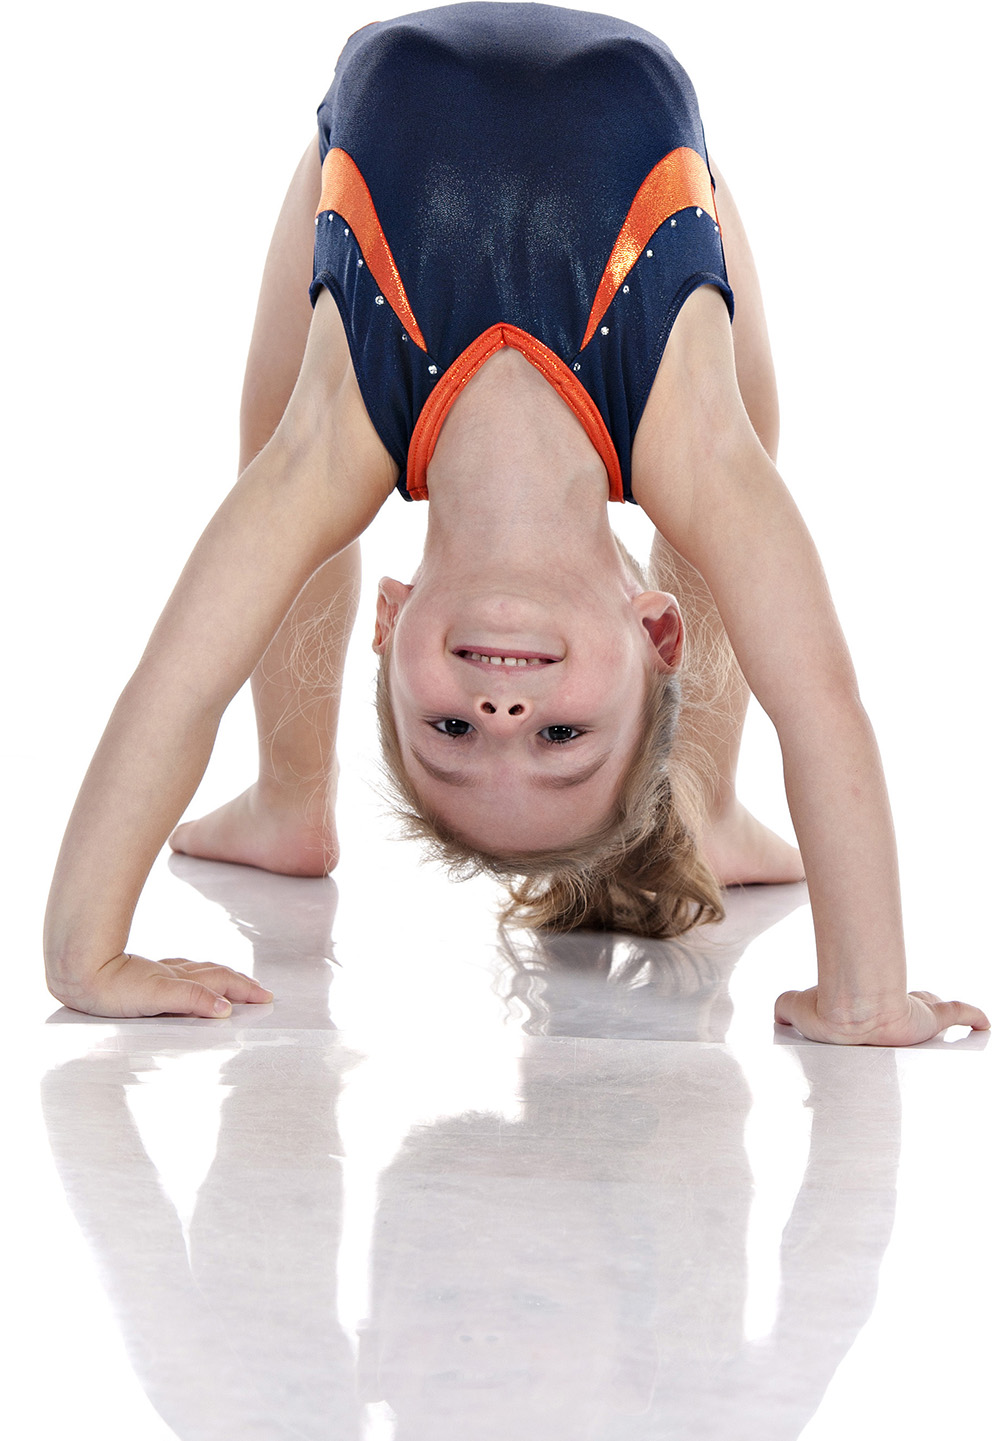 flexible gymnast girl bending over